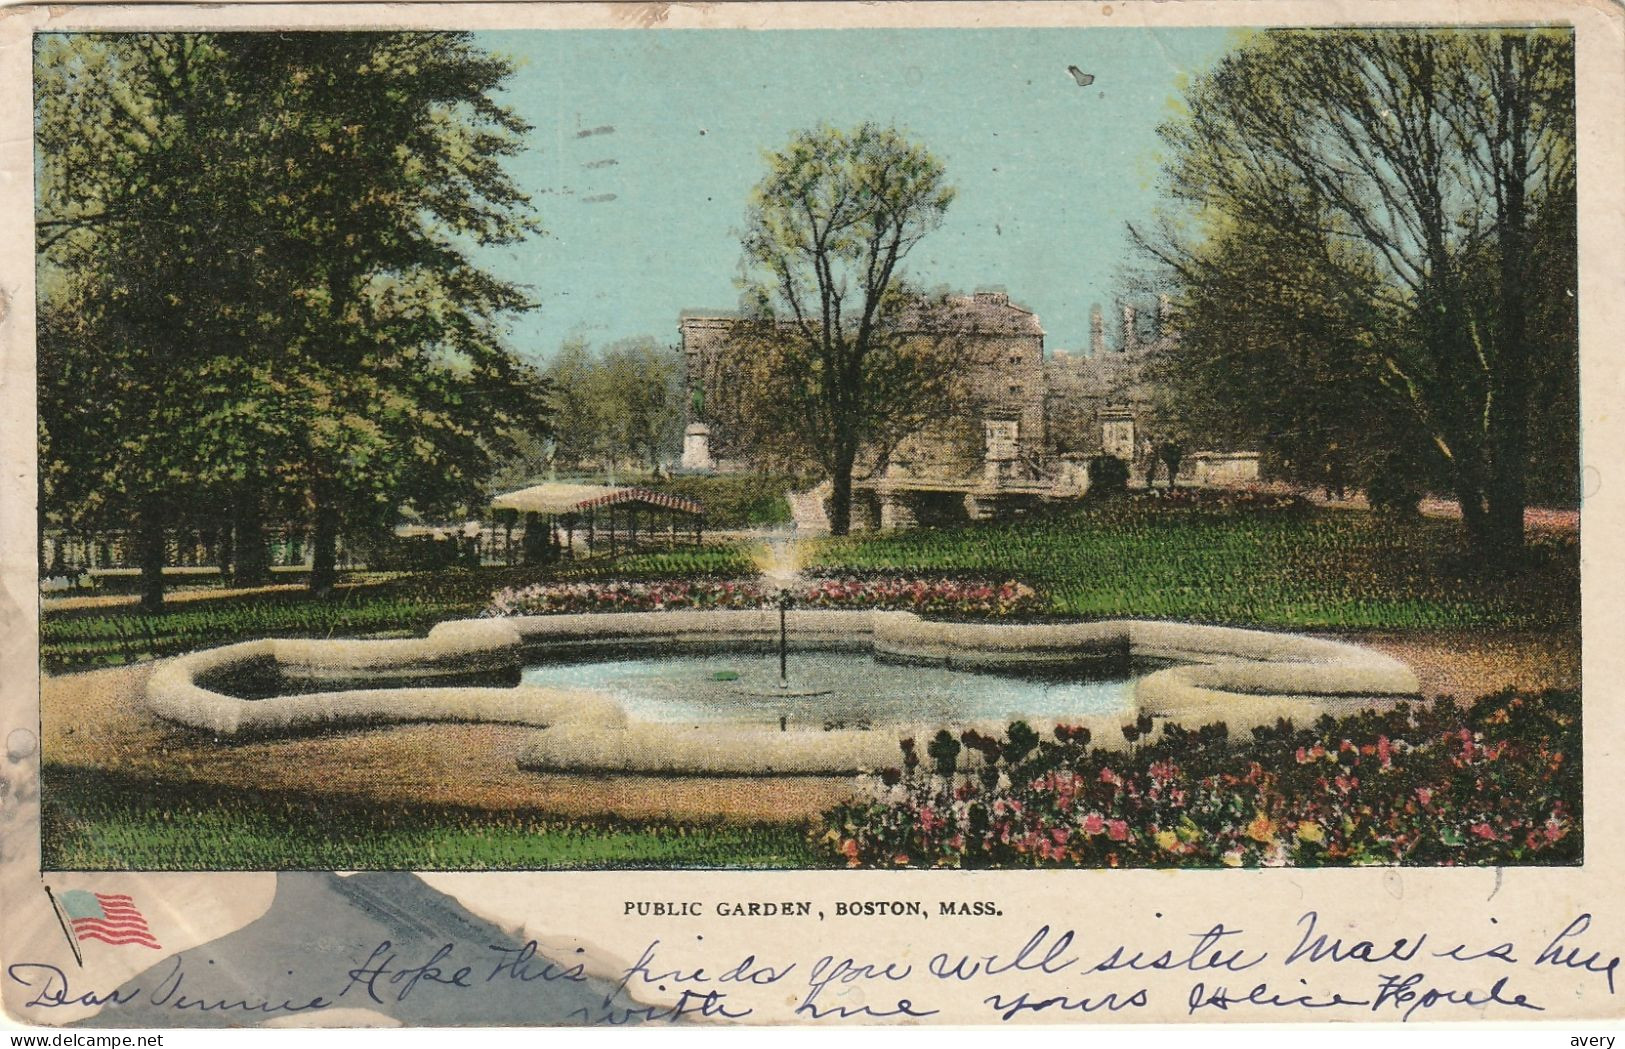 Public Garden, Boston, Massachusetts - Boston